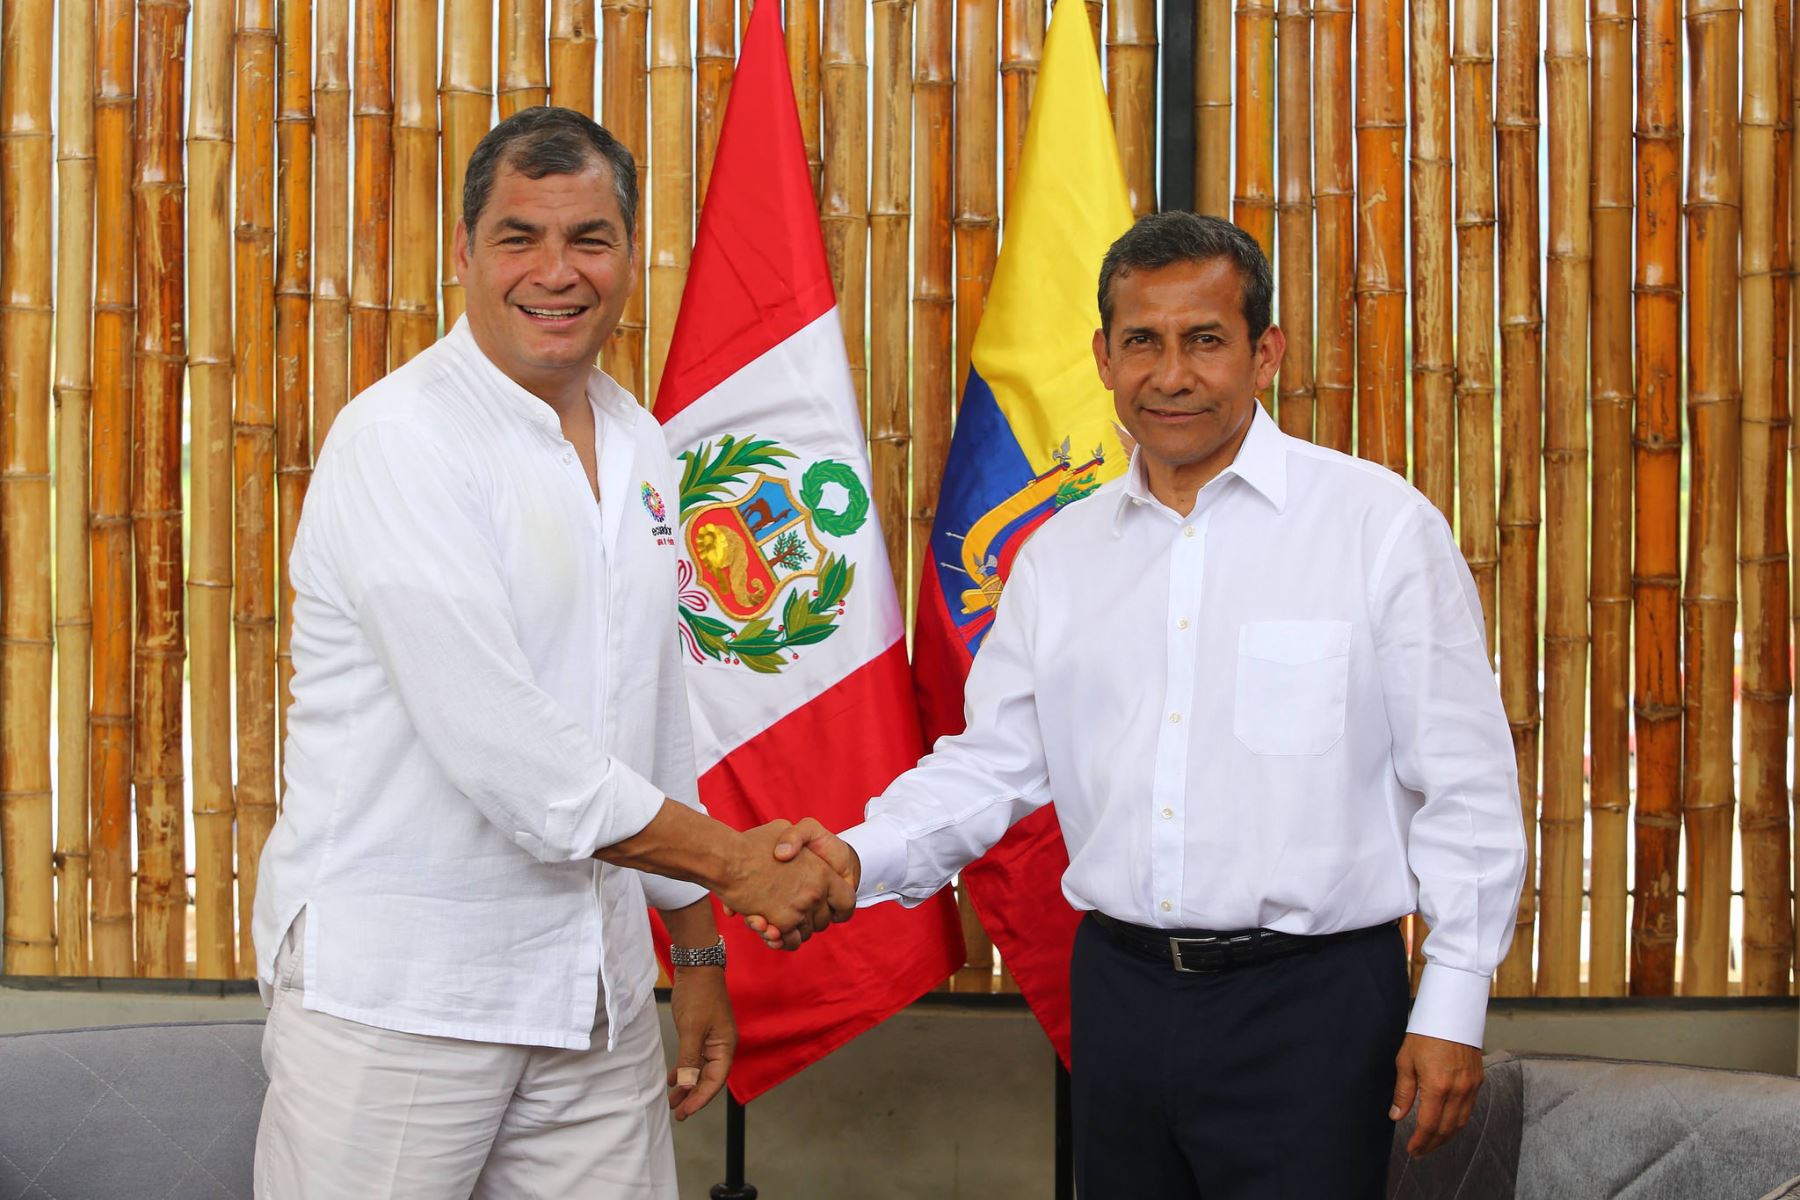 Encuentro bilateral de los mandatarios Ollanta Humala y Rafael Correa en la ciudad de Jaén